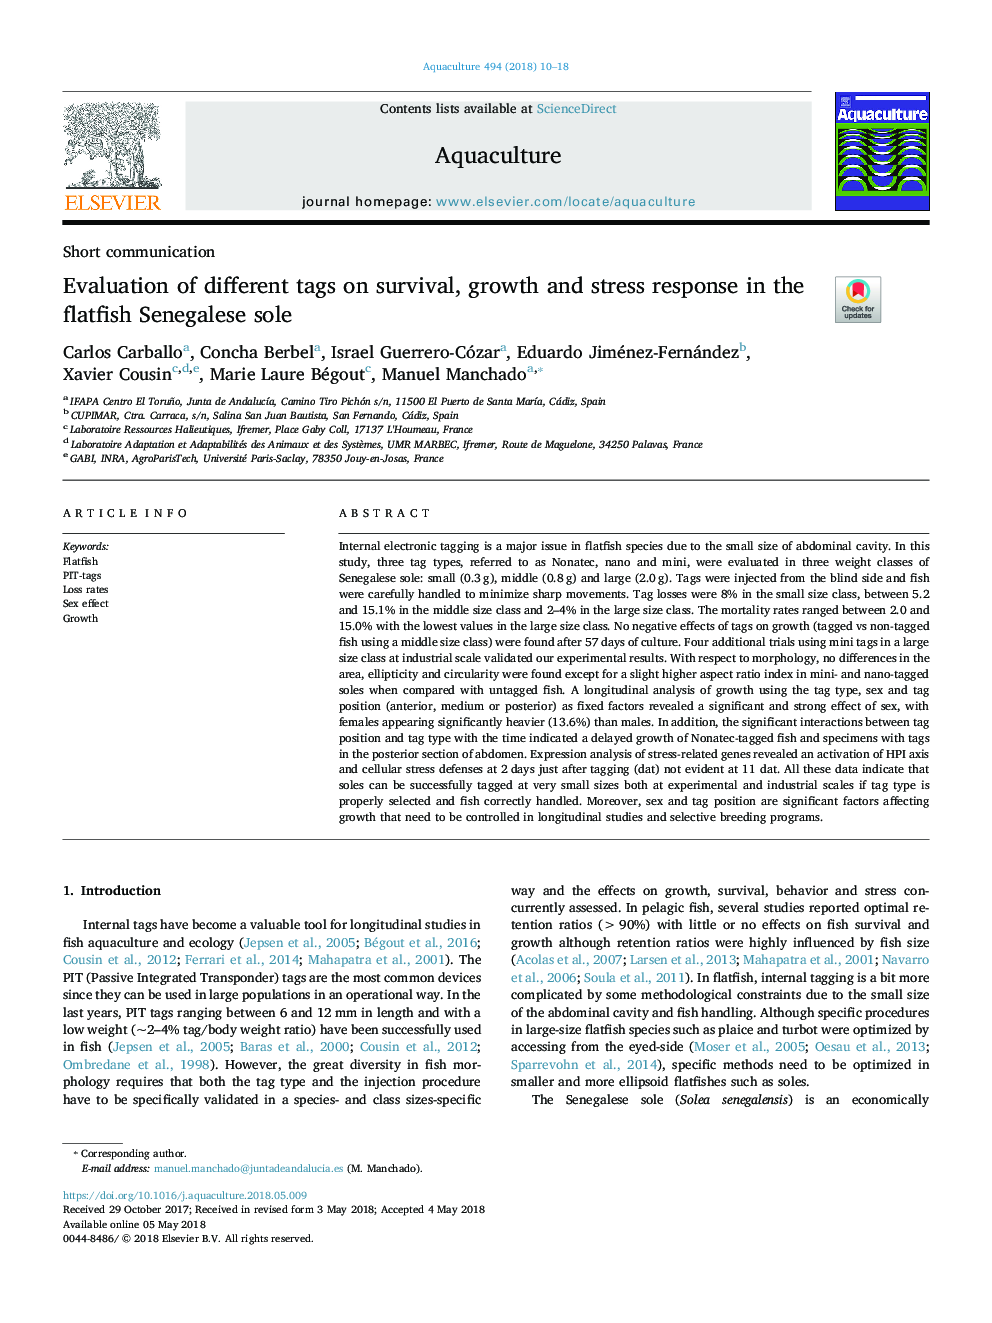 ارزیابی برچسب های مختلف در مورد زنده ماندن، رشد و پاسخ استرس در ماهی صخره ای سونگال 